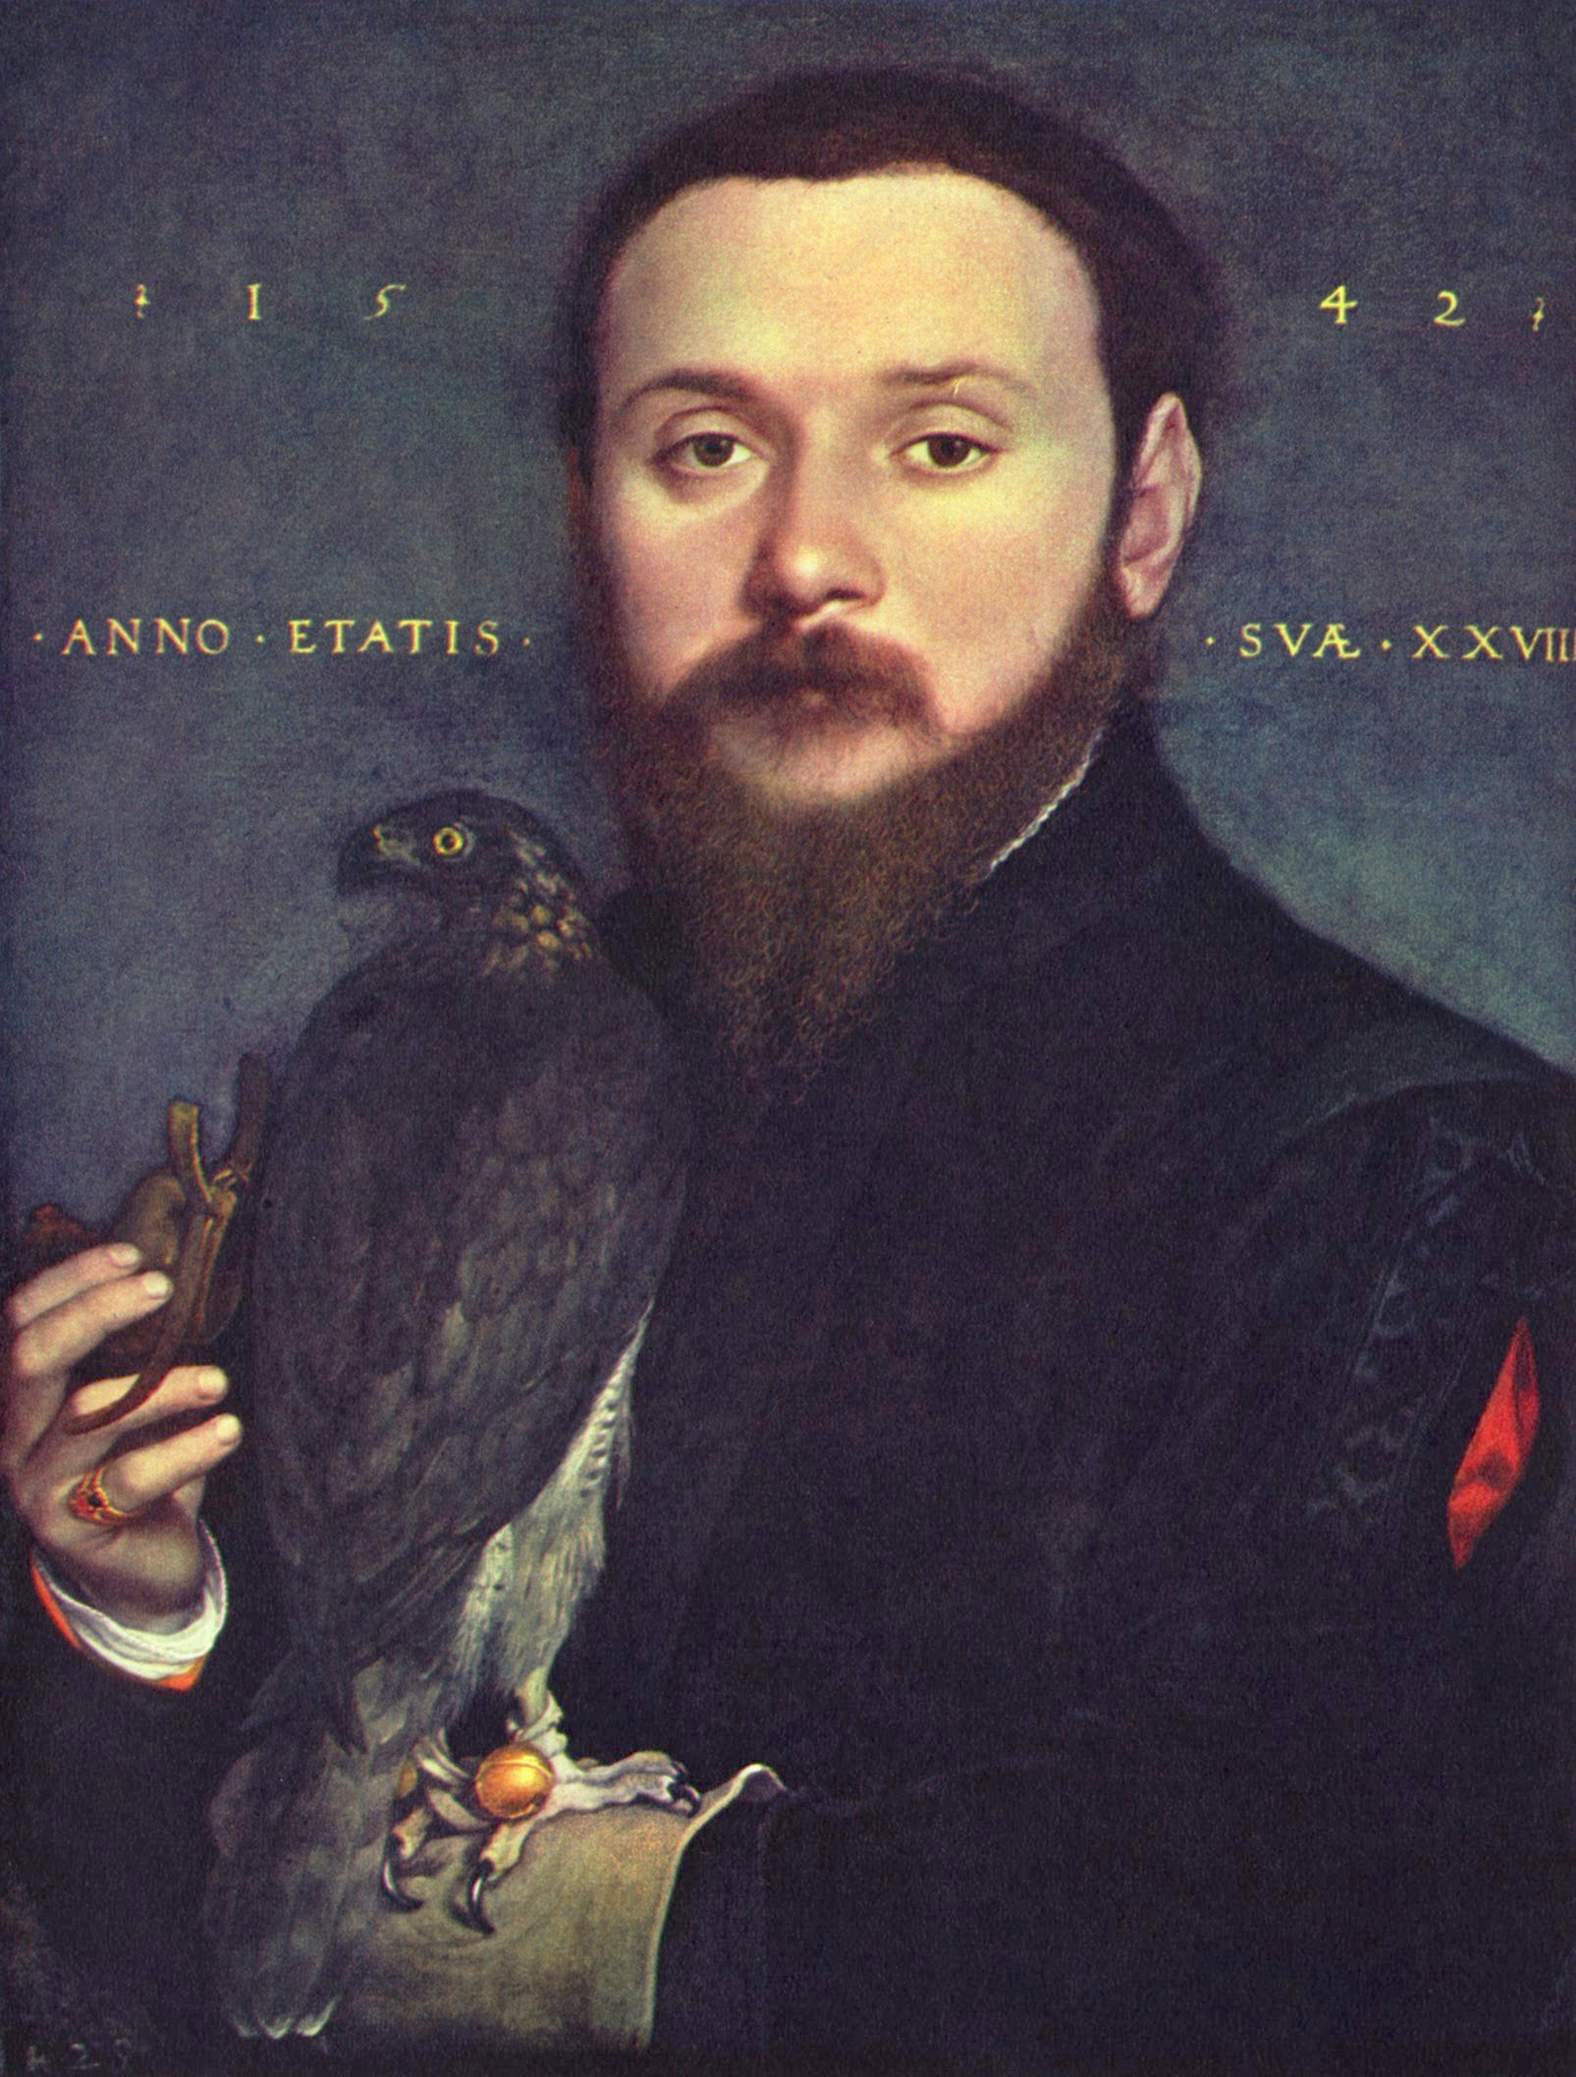 Hans Holbein peoplecheck.de